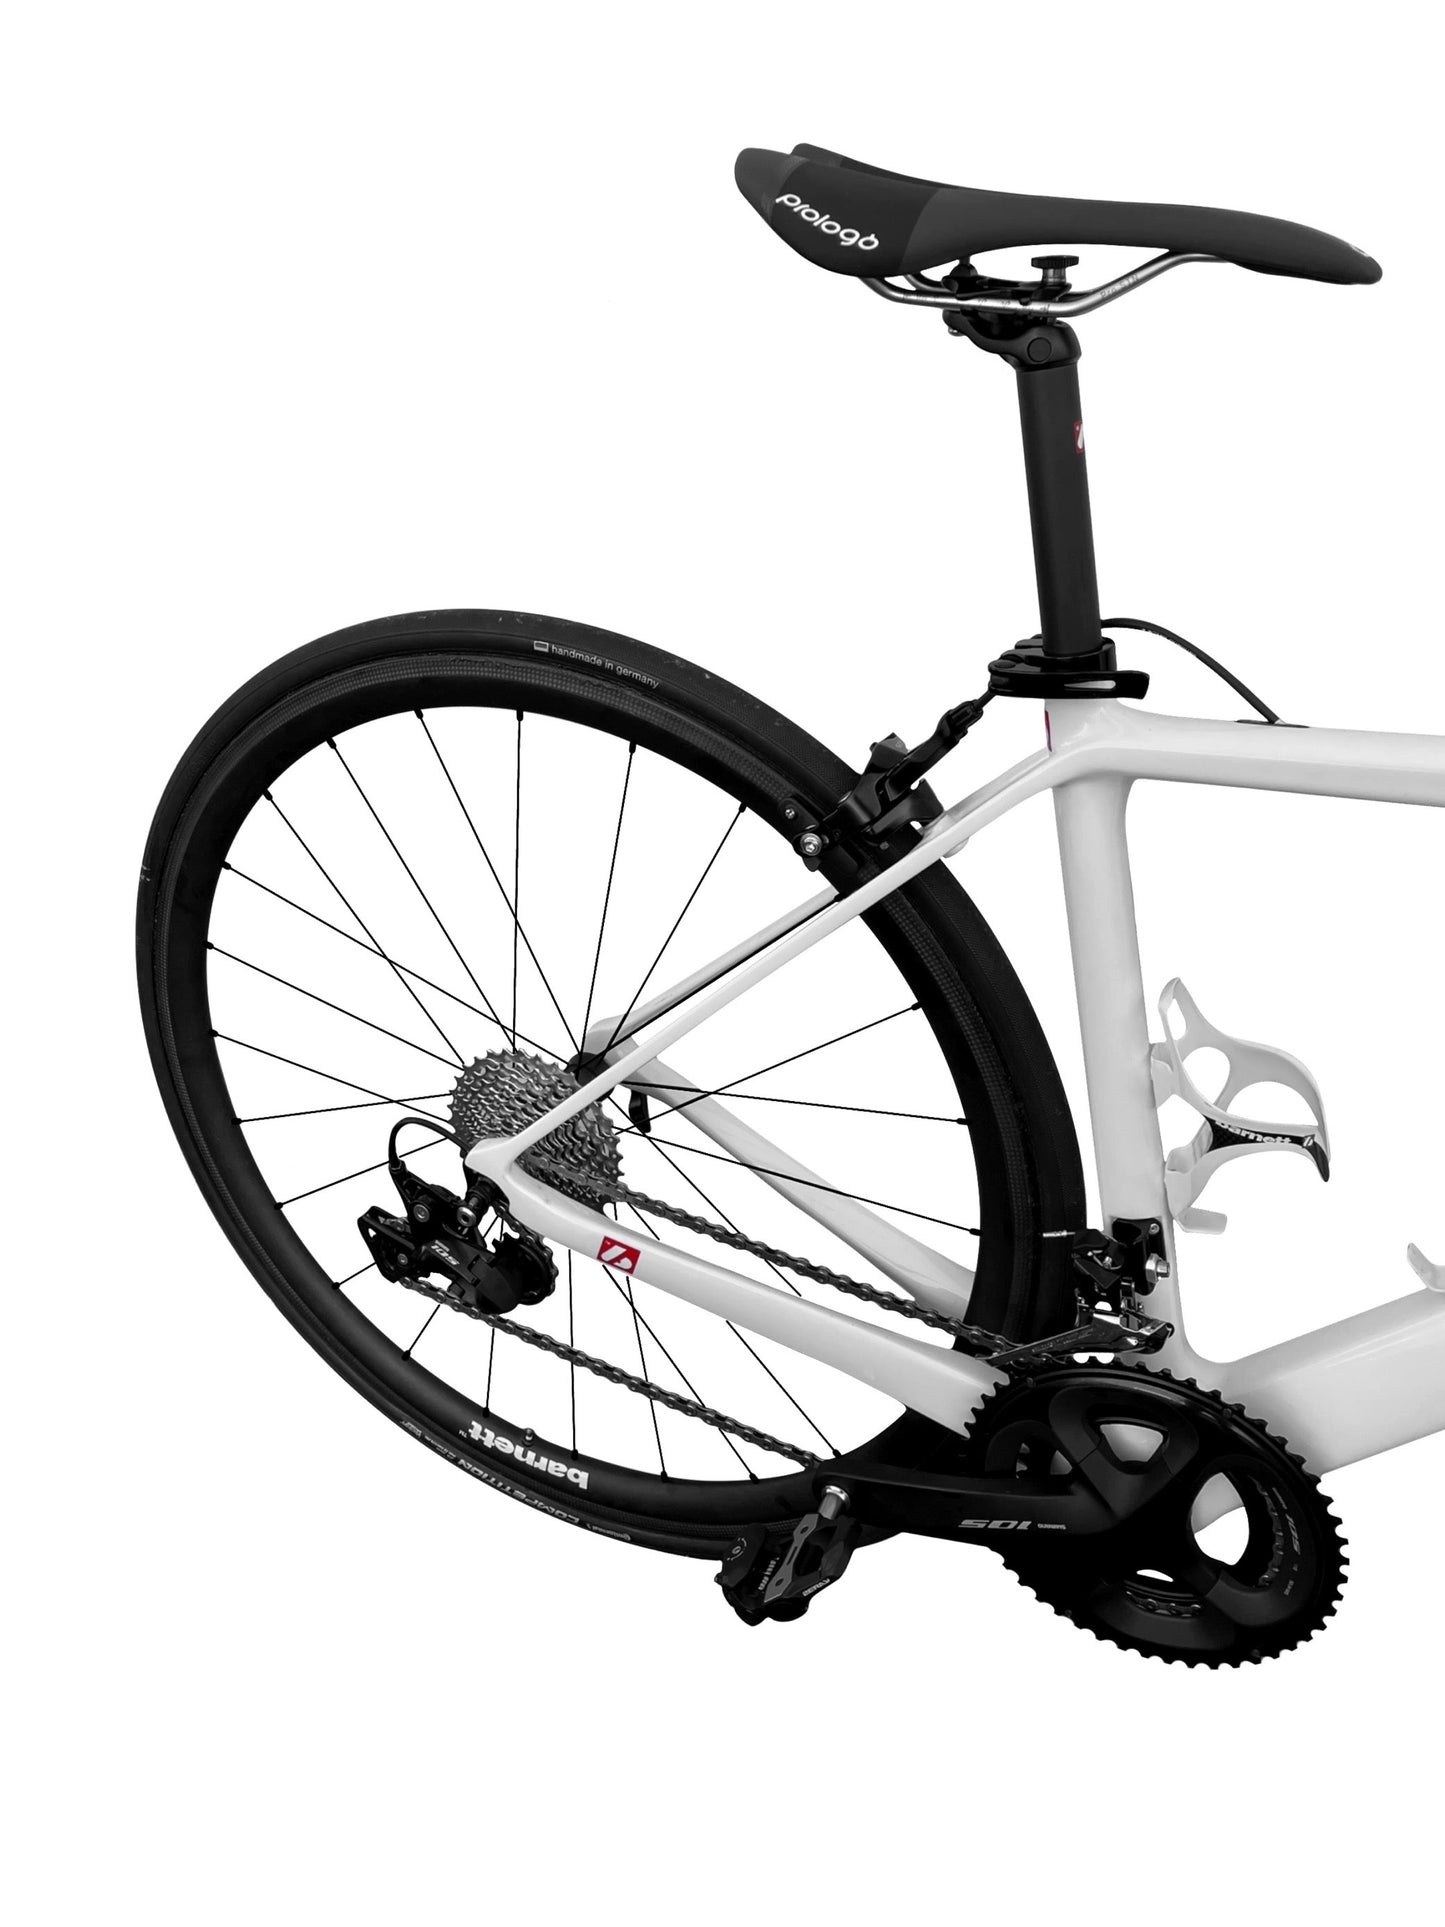 BRC-GLOSSY Bicicleta ensamblada  Shimano 105 // Cuadro y llantas de bicicleta de carbono Blanco